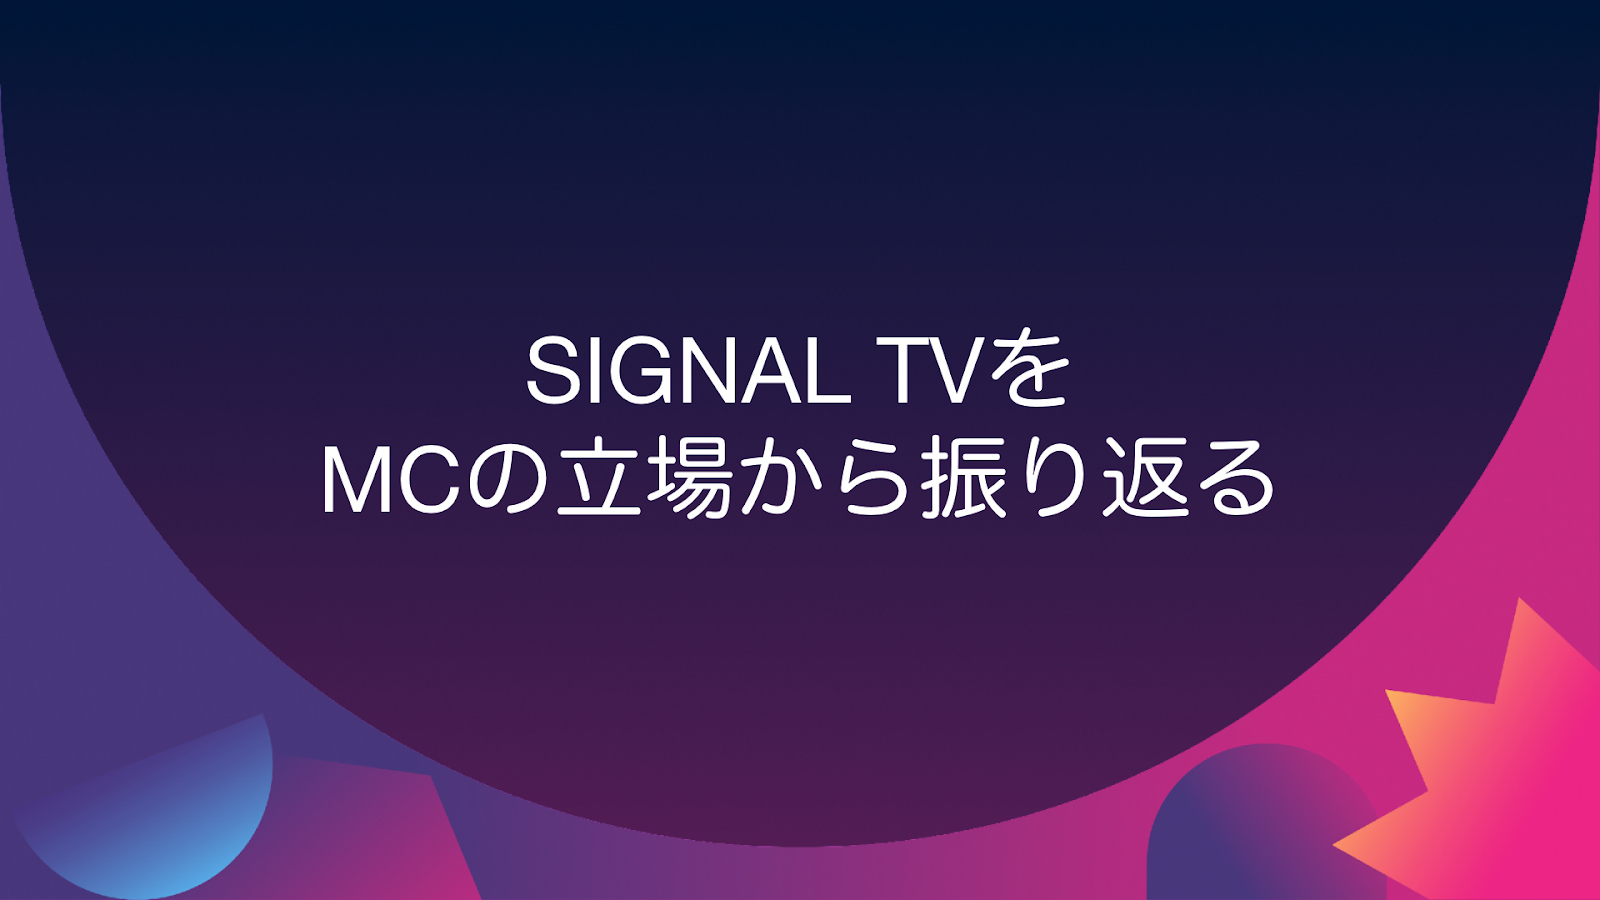 SIGNAL TV - recap by JP MC